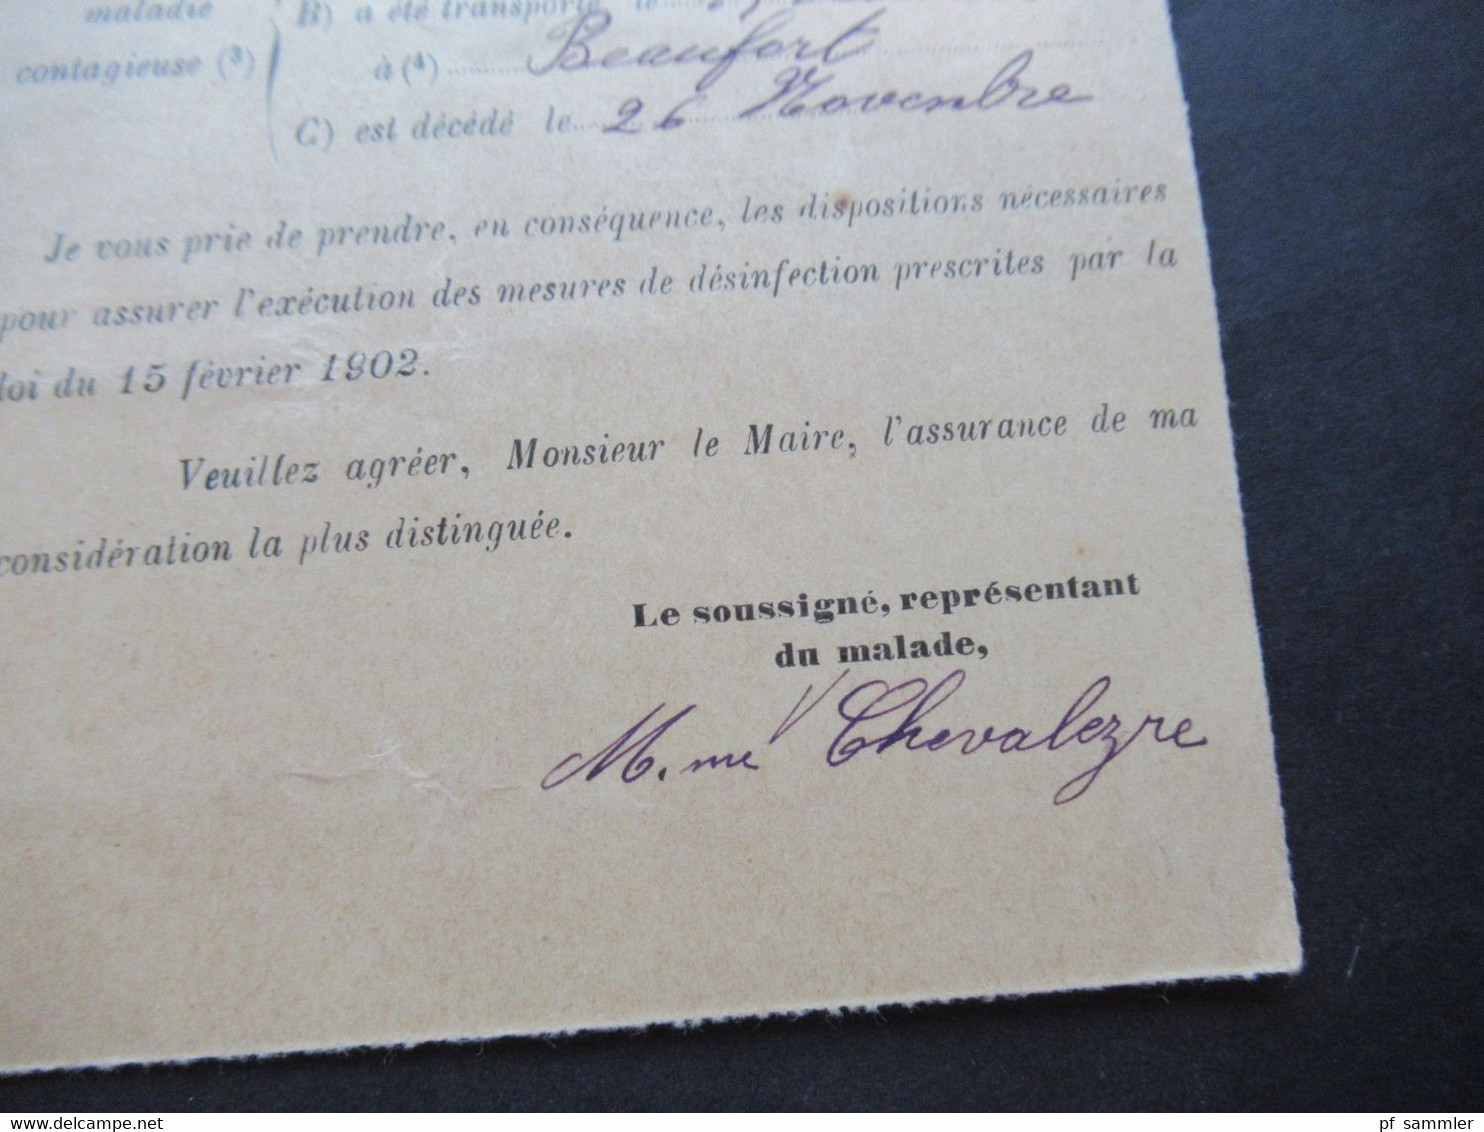 Frankreich 1912 Säerin Departement de Maine et Loire Service Public departemental de Desinfection an den Maire de Brion